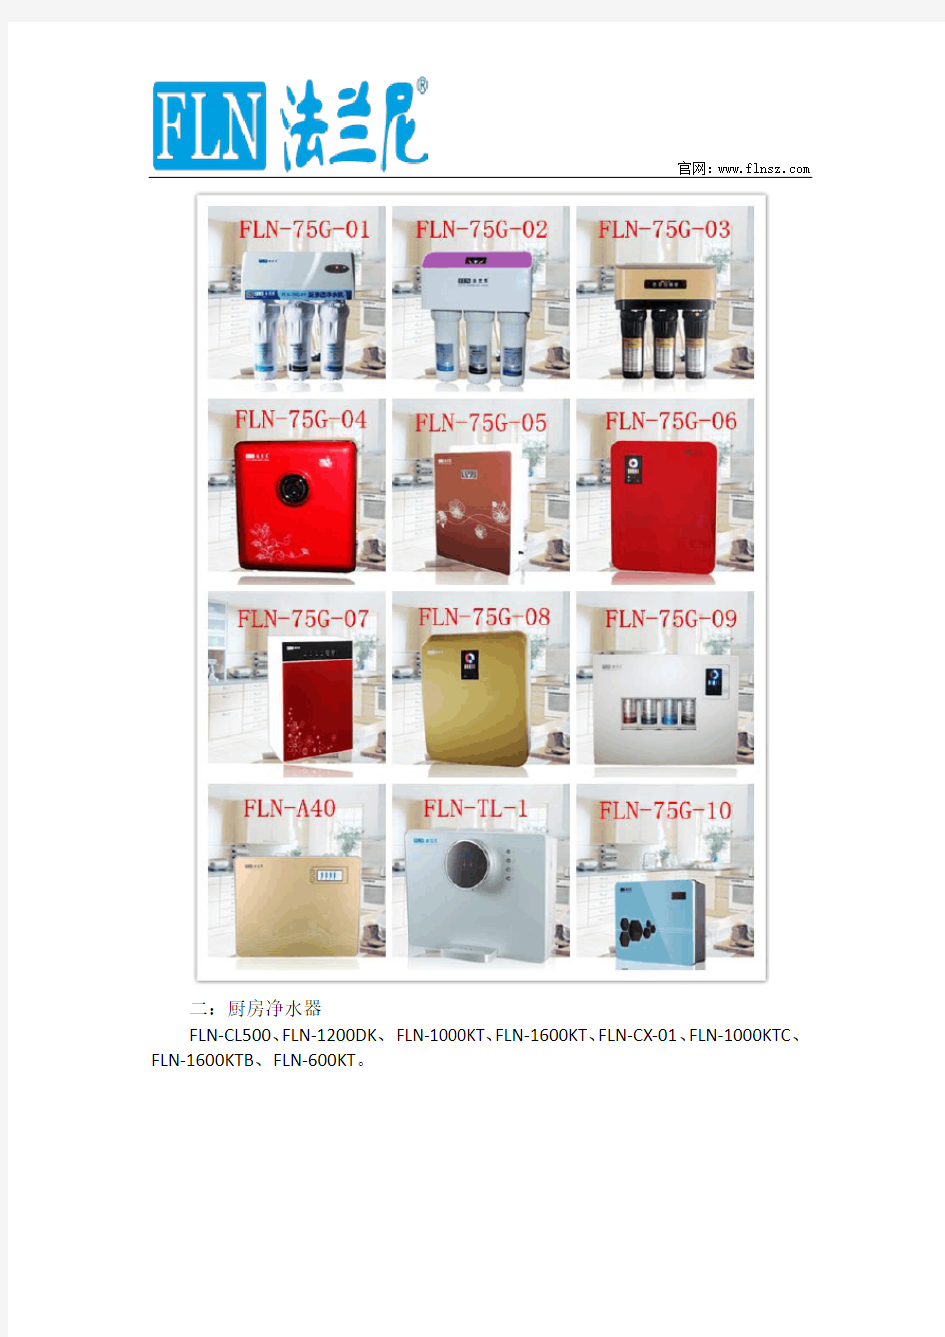 法兰尼净水器产品系列、型号、价格及图片详解